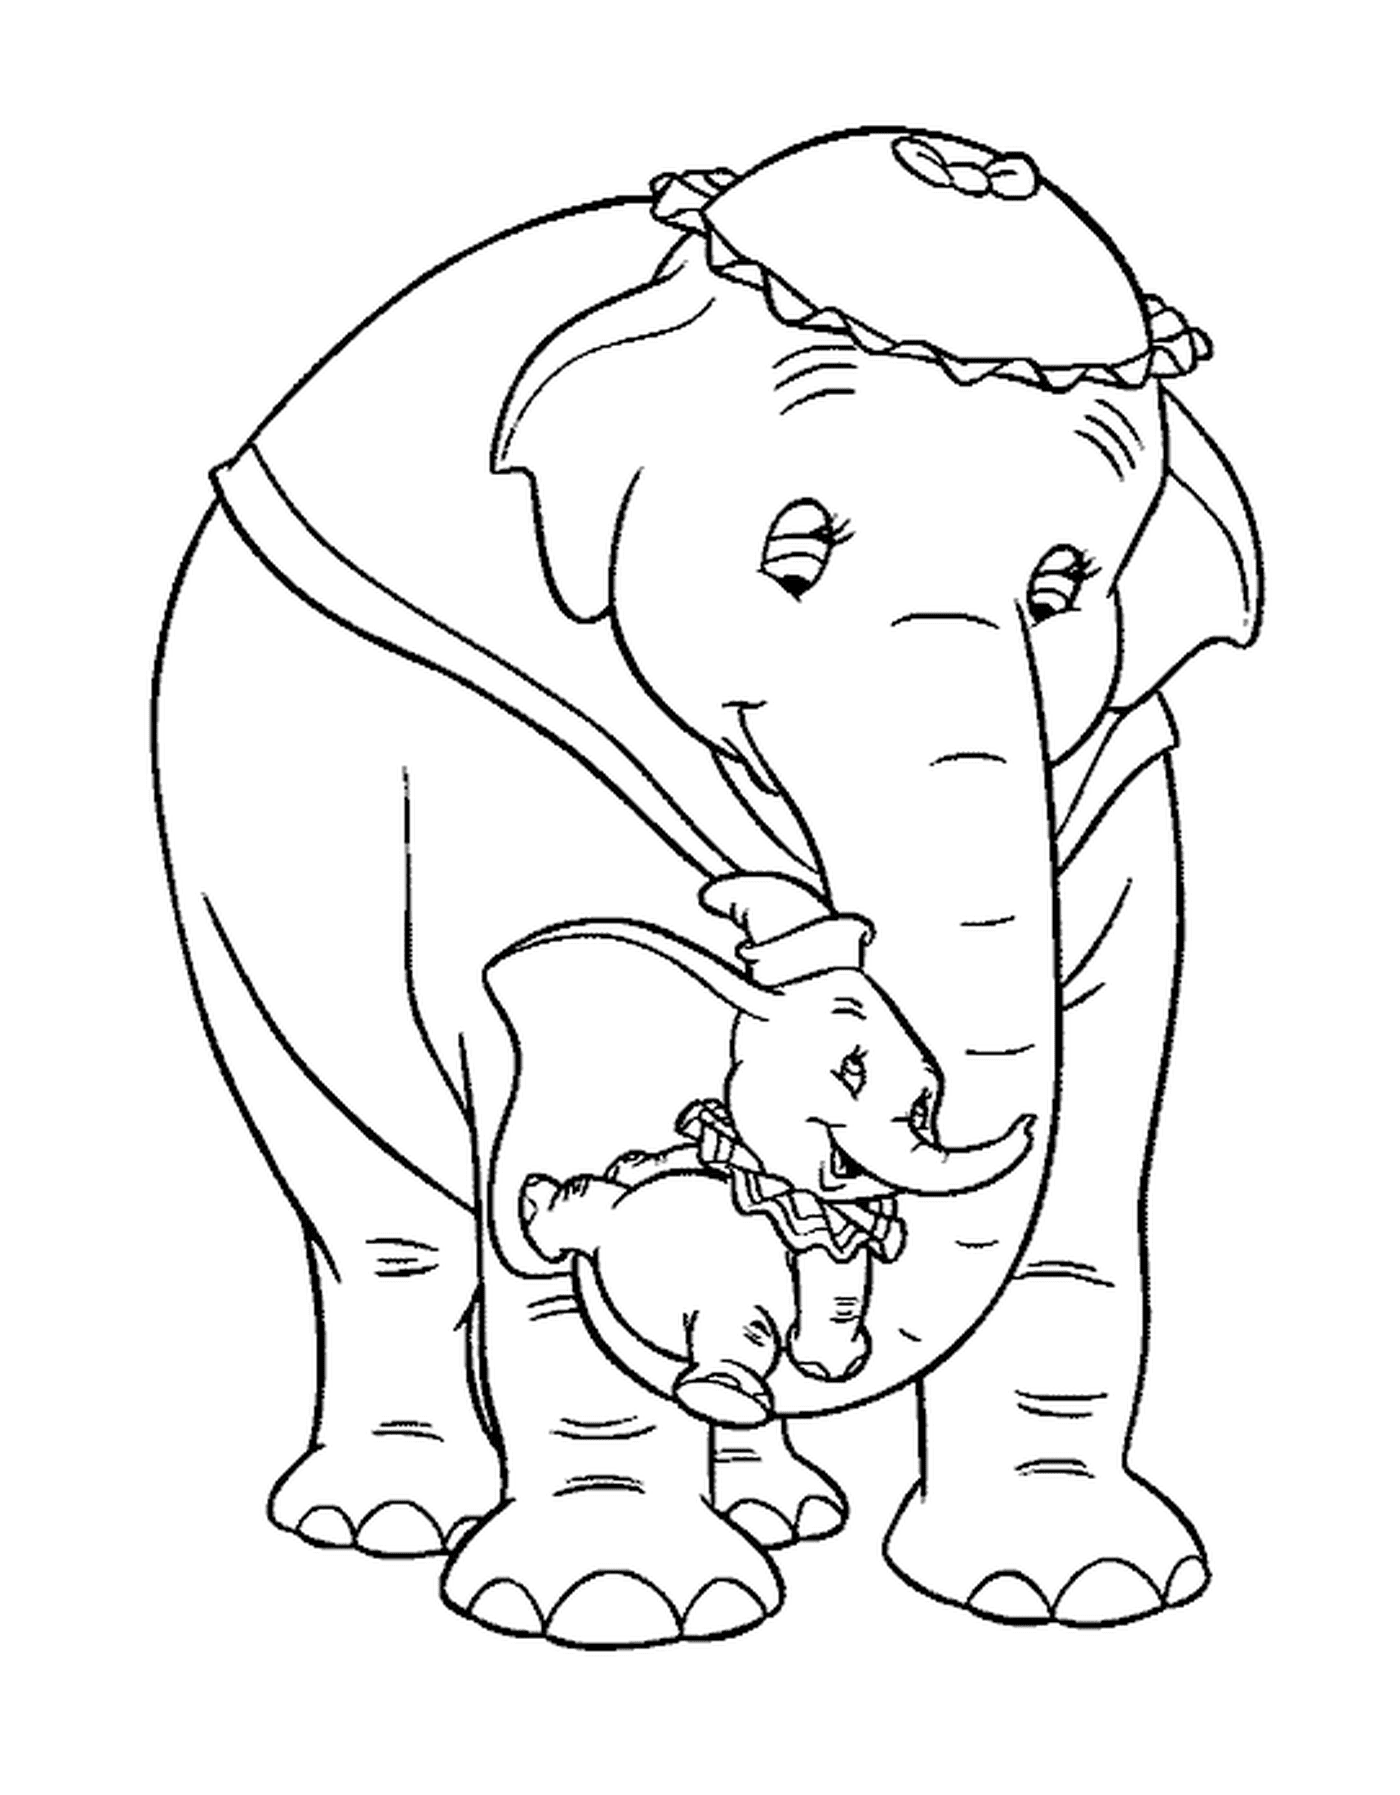  एक वयस्क हाथी और उसके बच्चे के अगले दरवाजे 